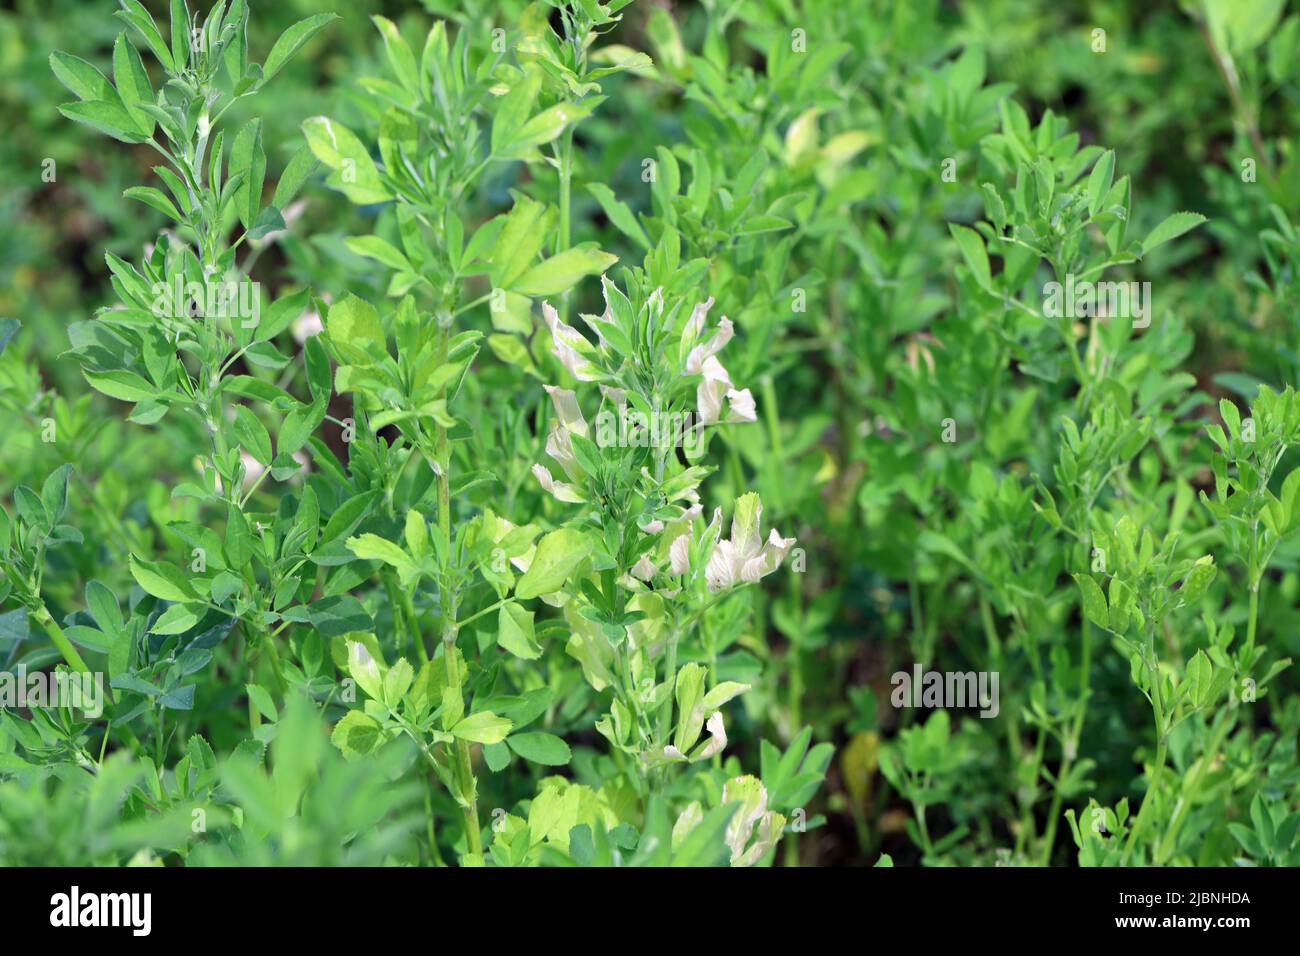 Alfalfa (Medicago sativa) malattia, ingiallimento di foglie su raccolto. Foto Stock